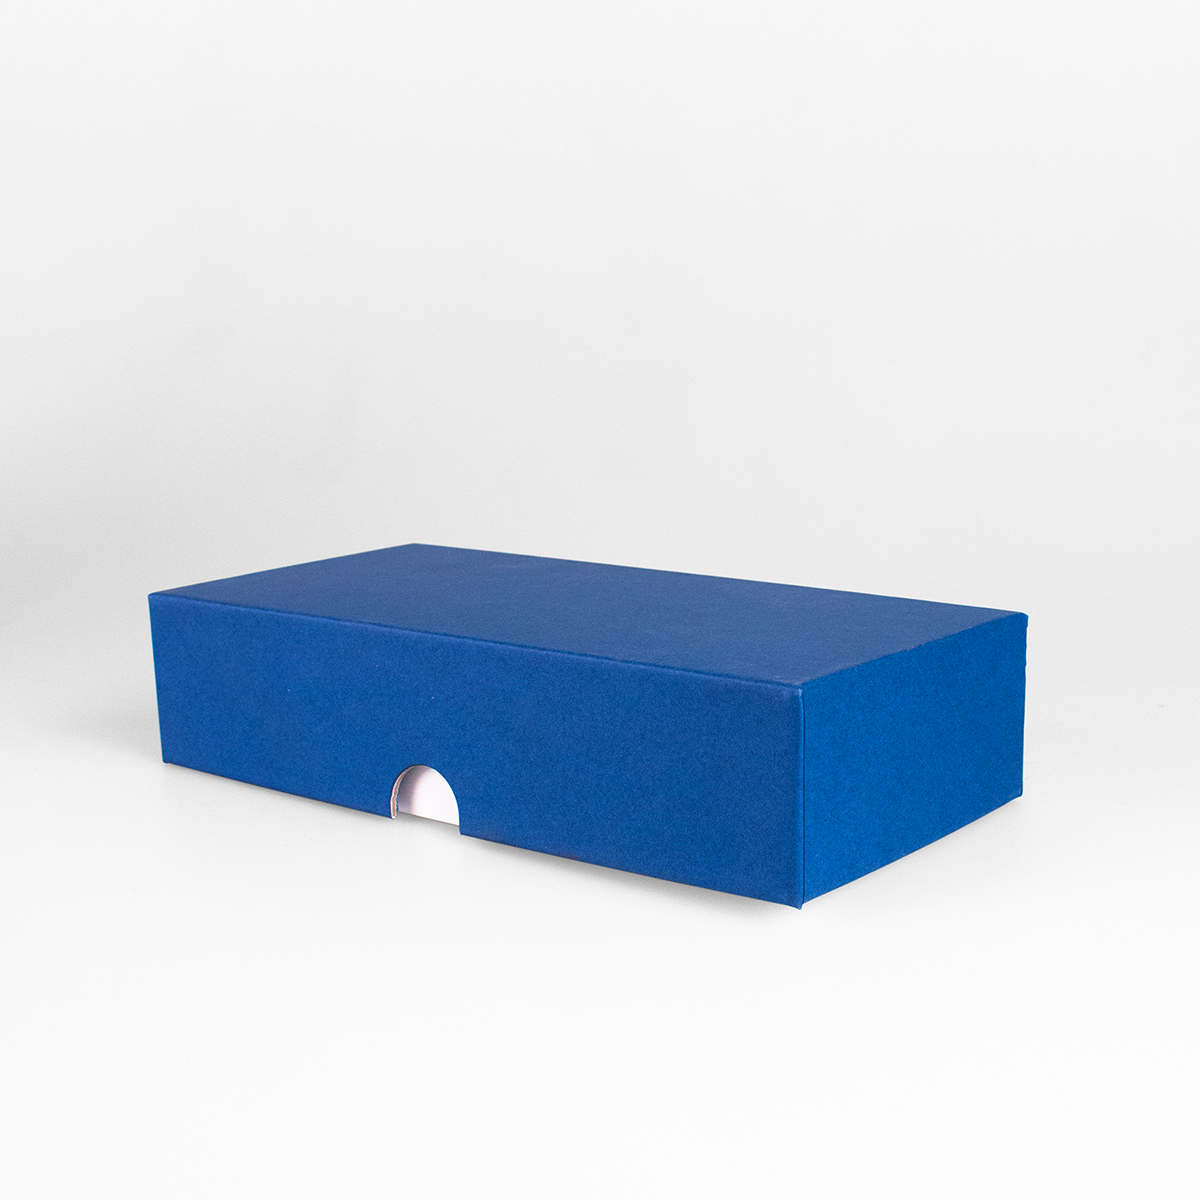 Подарочная коробка крышка-дно, 21.5 x 10.5 x 5 см. "Радуга", синий, белый